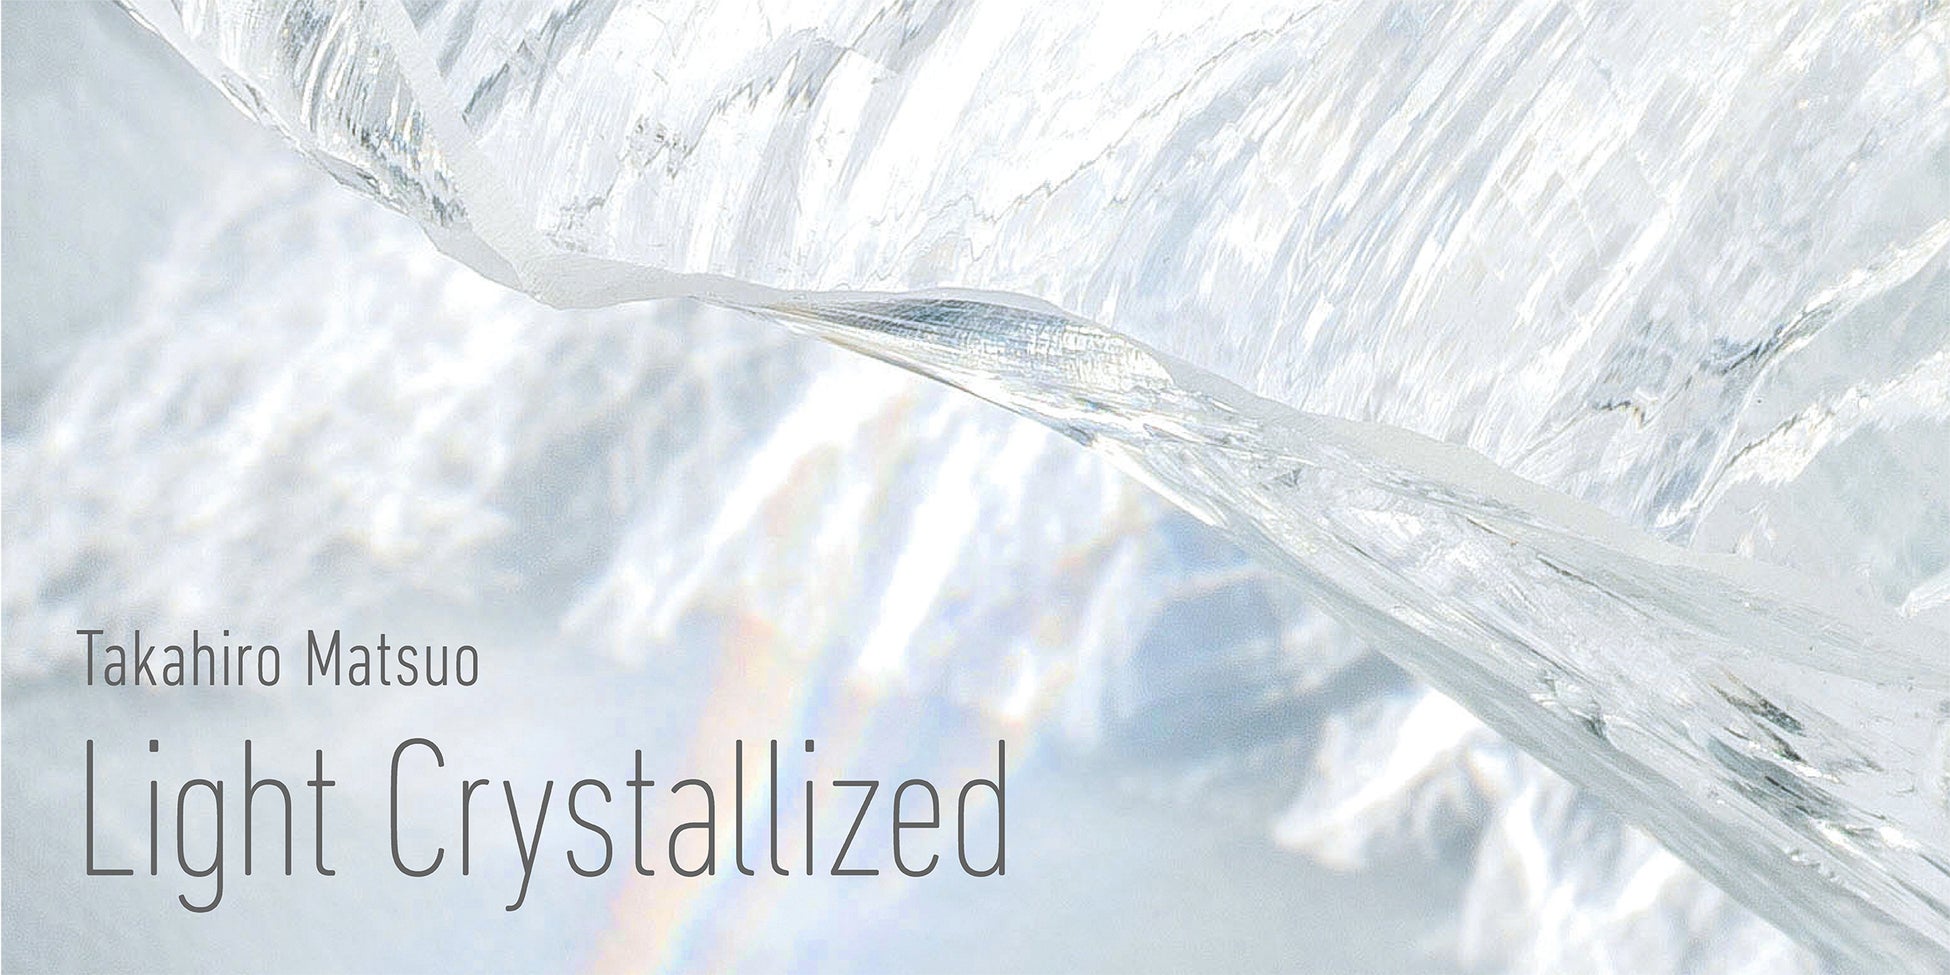 世界的にも希少な“クオーツガラス”使用の大型作品を初公開！『Takahiro Matsuo “Light Crystallized”』展開催のサブ画像1